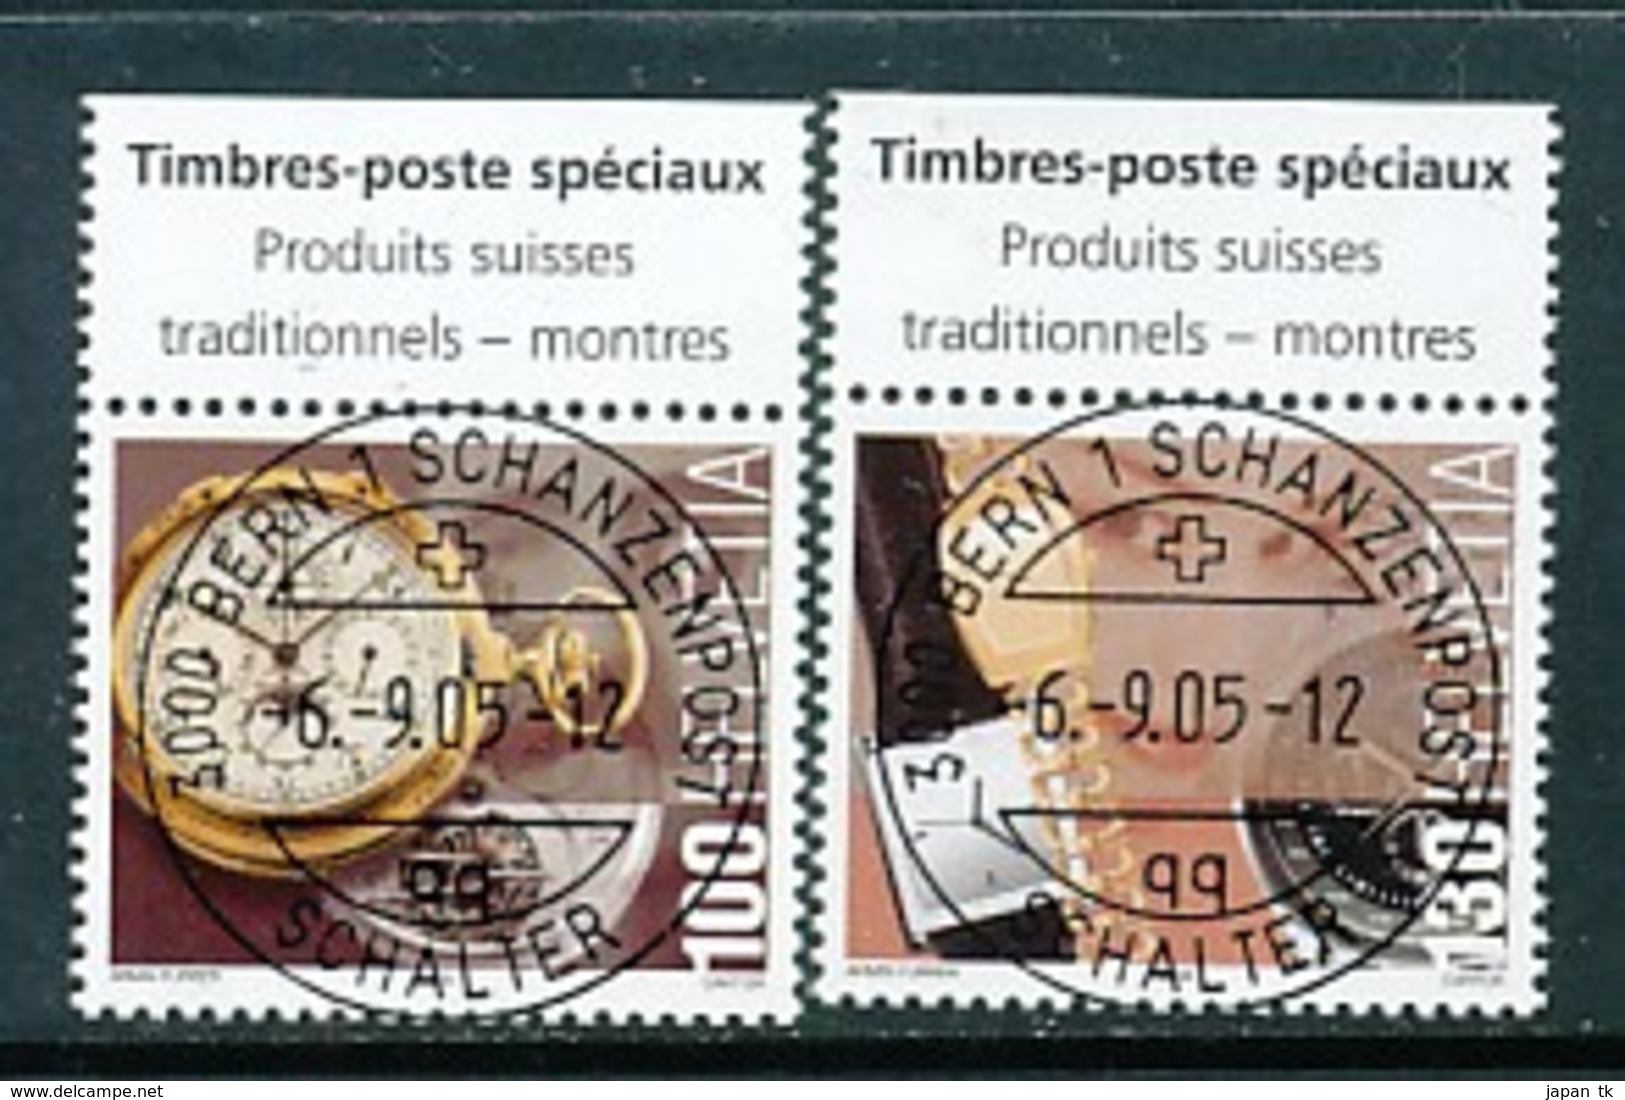 SCHWEIZ Mi. Nr. 1933-1934 Schweizer Produkte Mit Tradition - Uhren - Used - Used Stamps